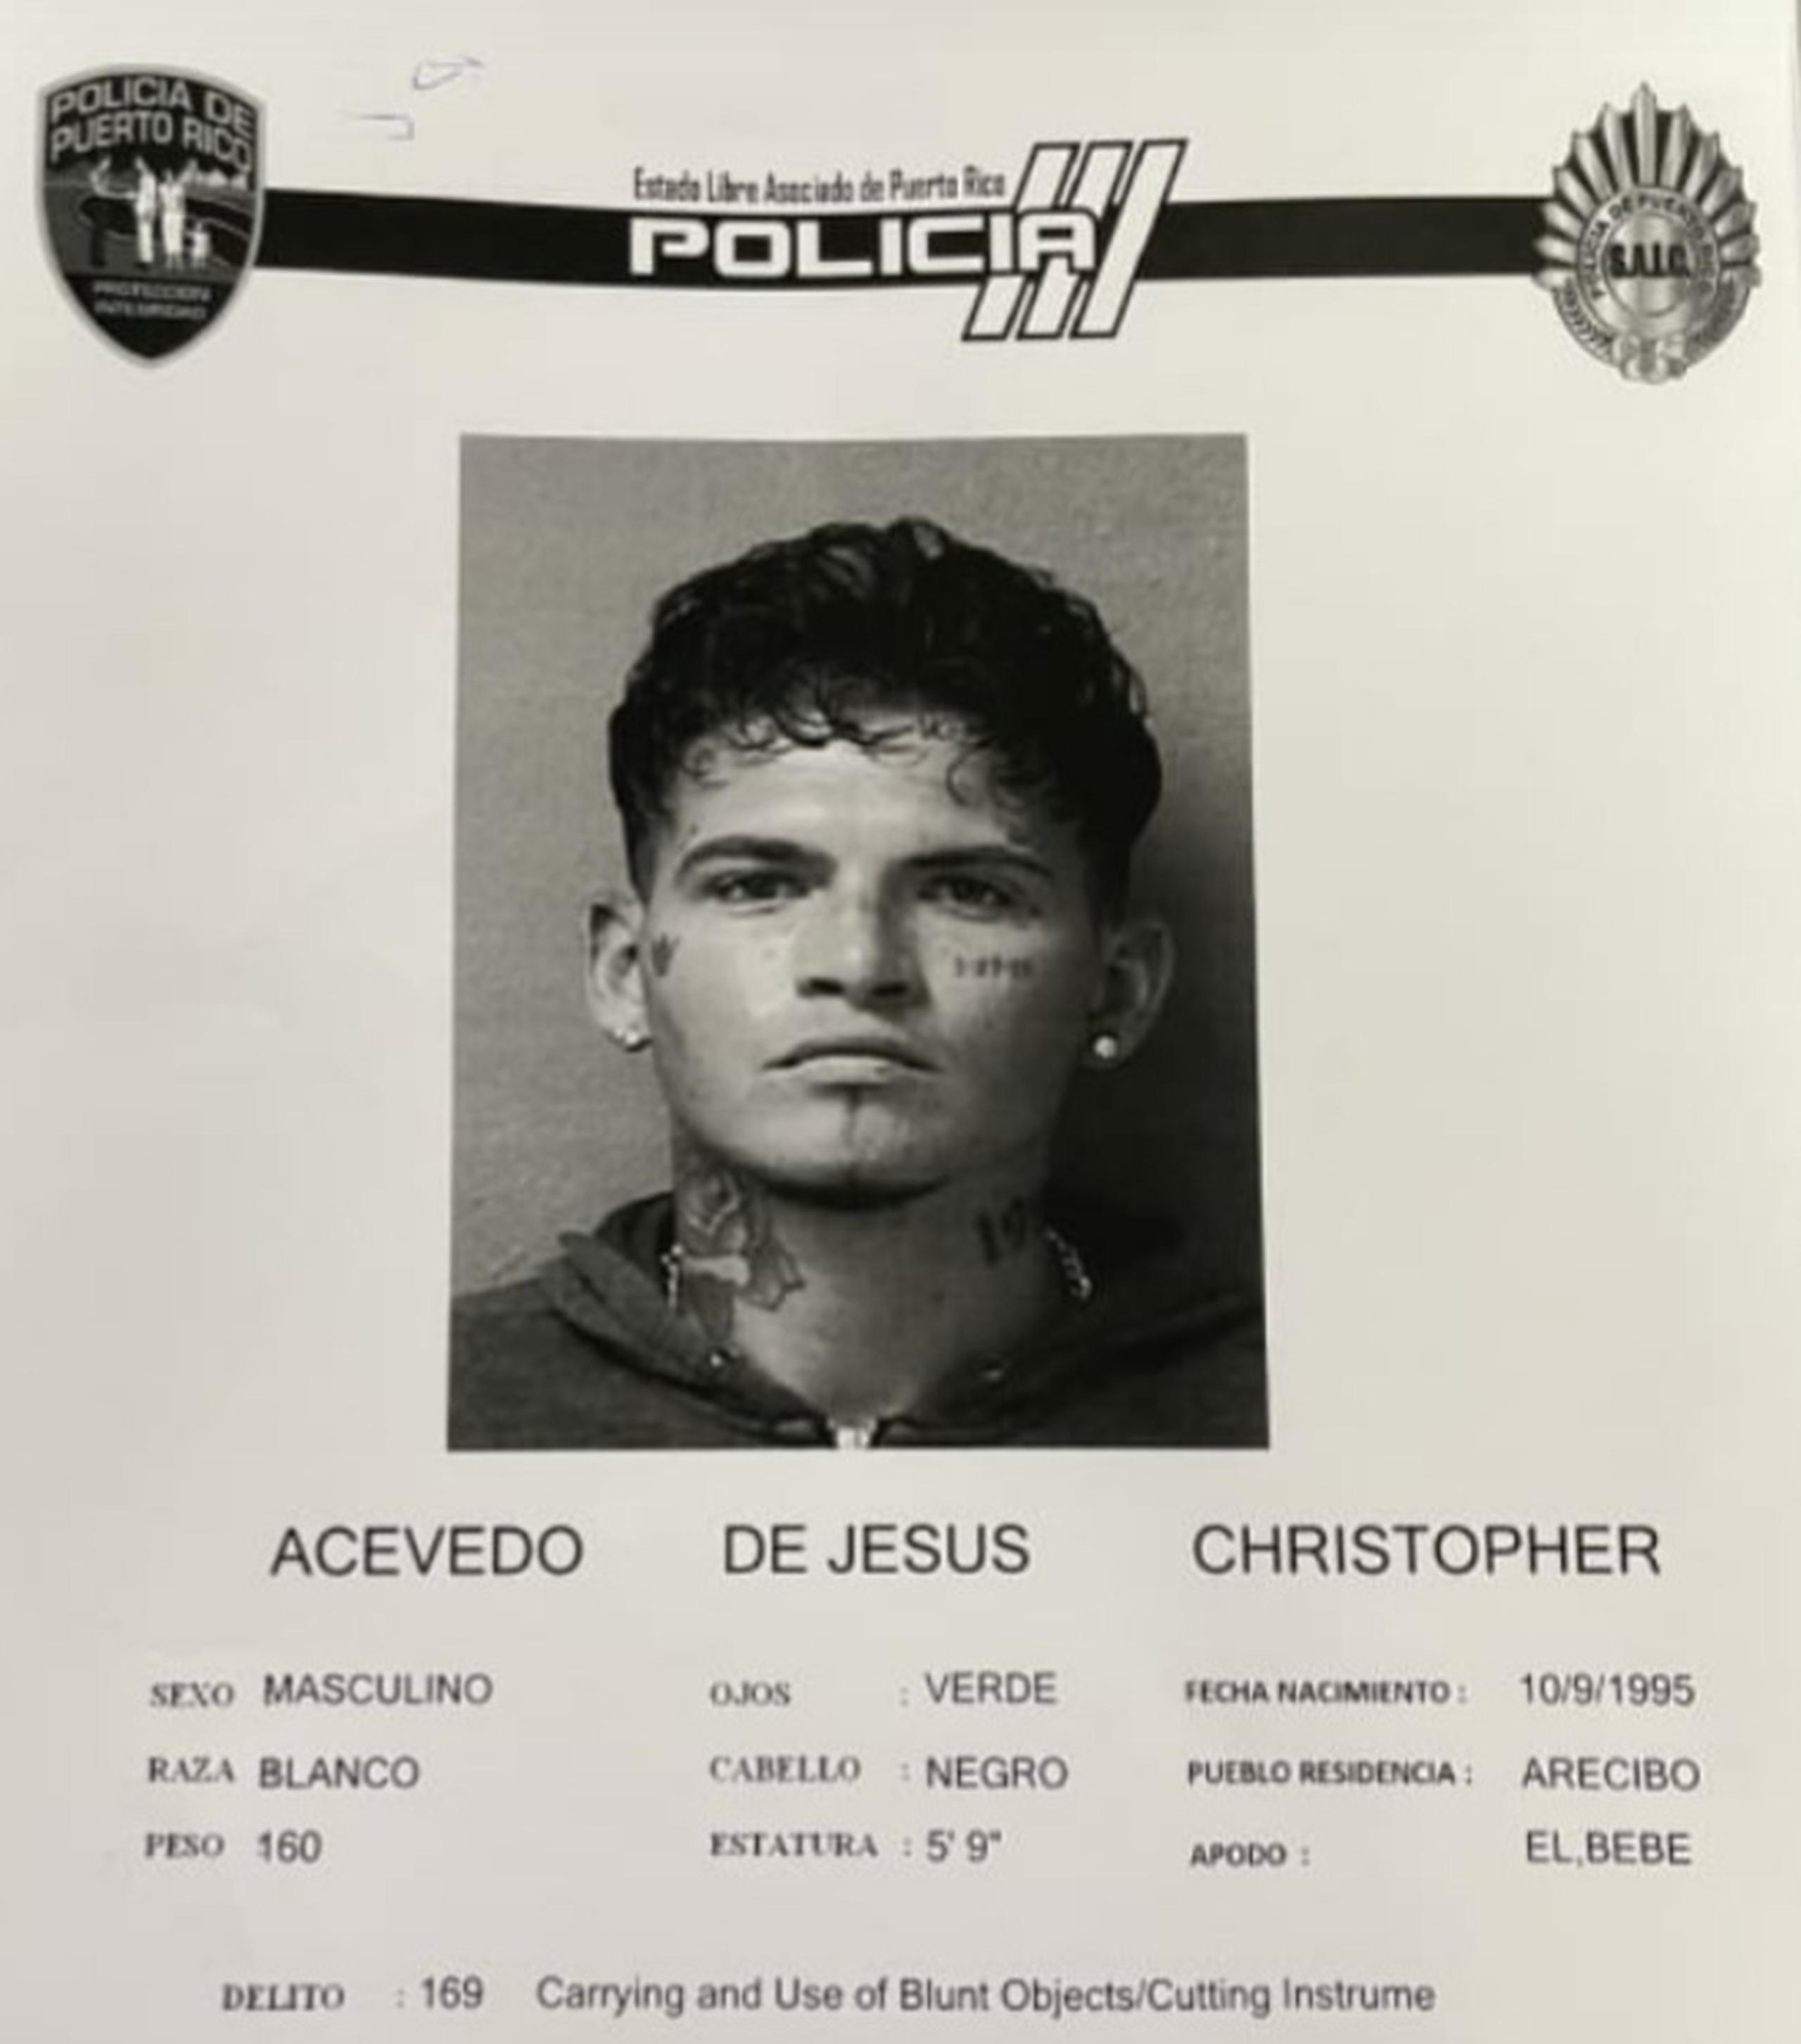 Christopher Acevedo De Jesús 25 años, fue encarcelado tras ser acusado por violación a la Ley de Armas, daños agravados, agresión y amenaza (menos grave),